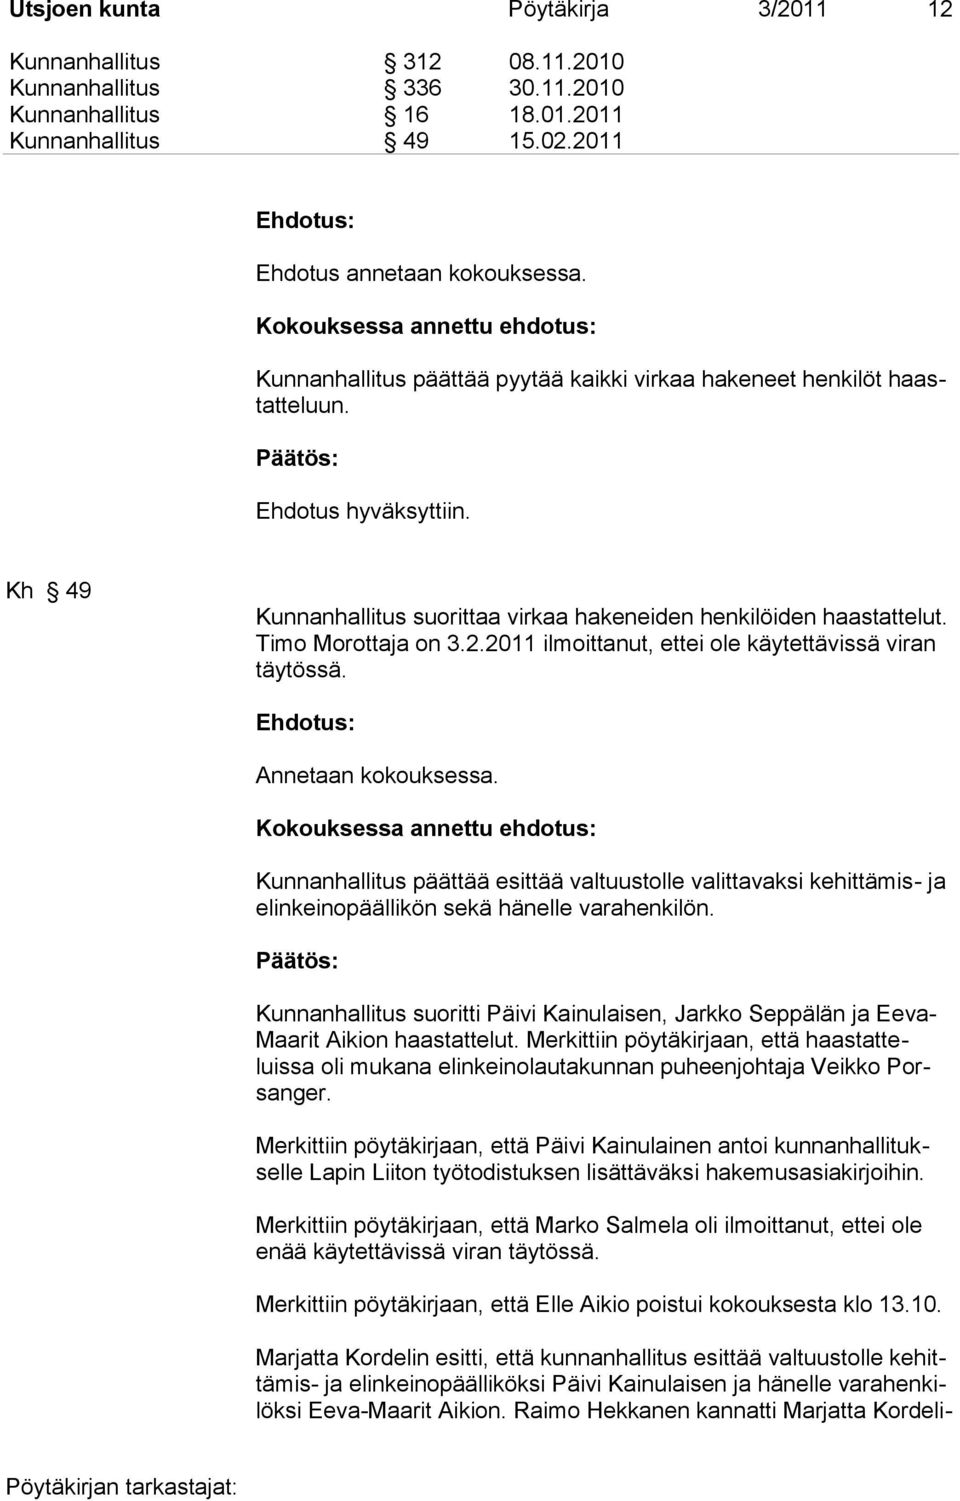 Kh 49 Kunnanhallitus suorittaa virkaa hakeneiden henkilöiden haastattelut. Timo Morottaja on 3.2.2011 ilmoittanut, ettei ole käytettävissä viran täytössä. Annetaan kokouksessa.